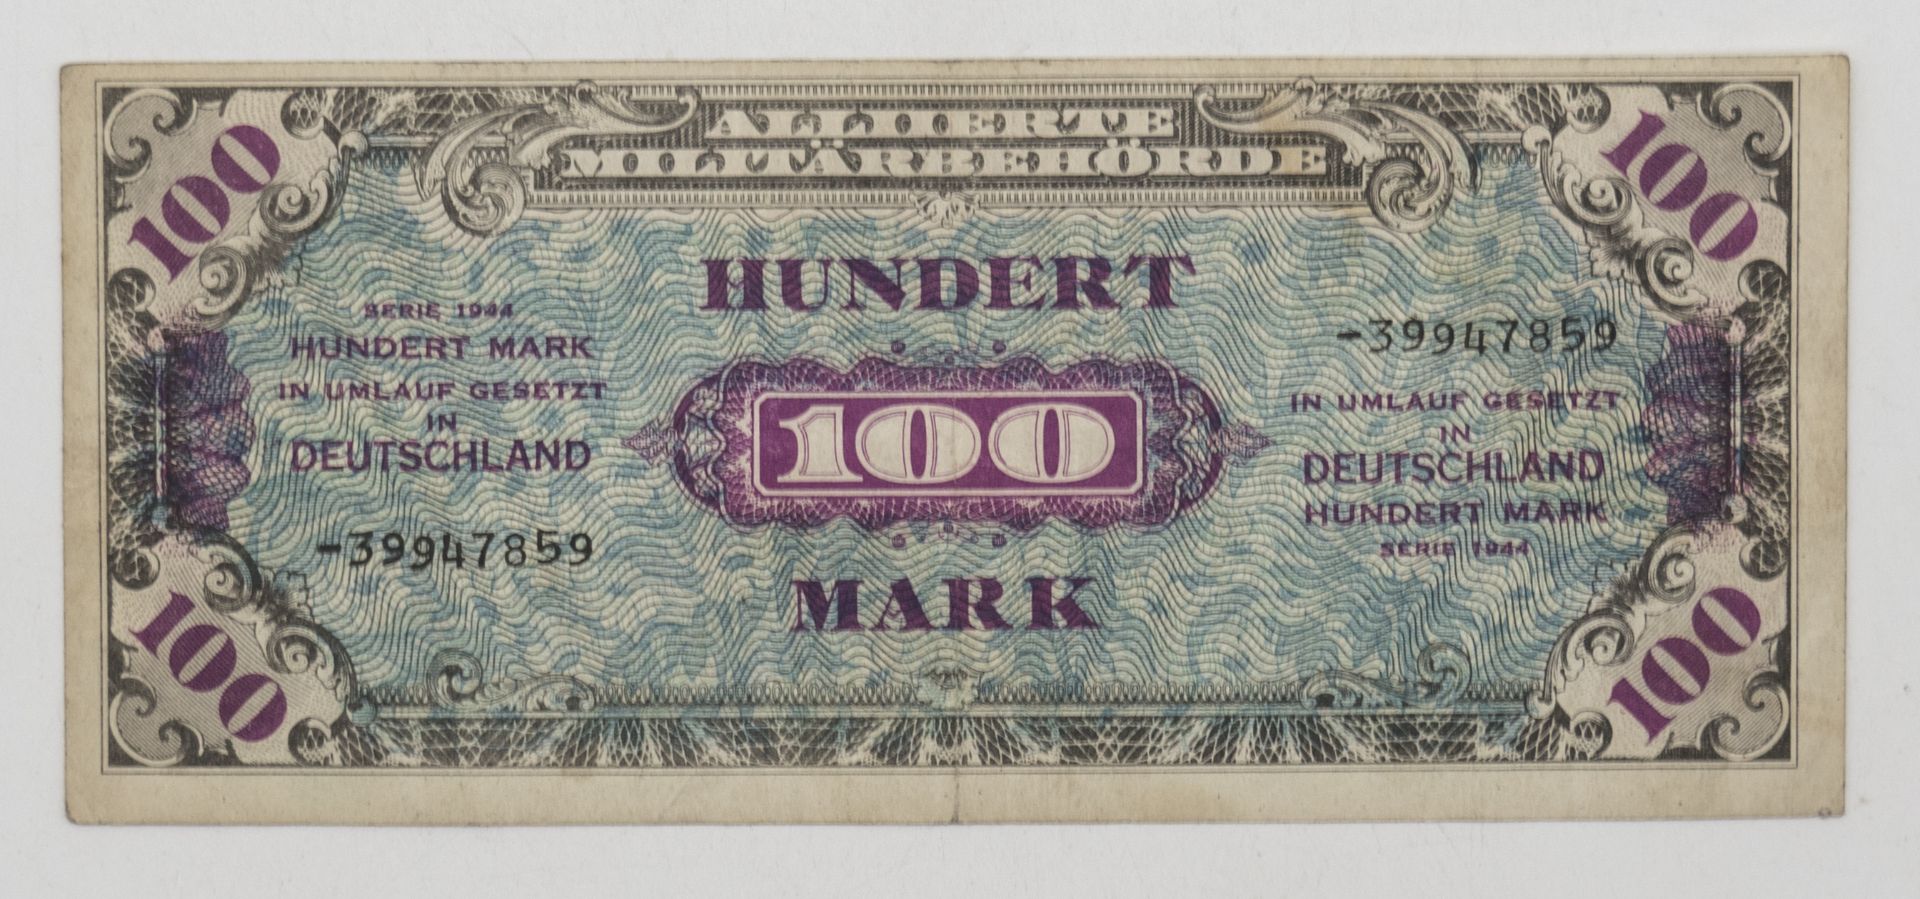 Deutschland - Alliierte Militärbehörde 1944, 100 Mark - Banknote. Erhaltung: ss.